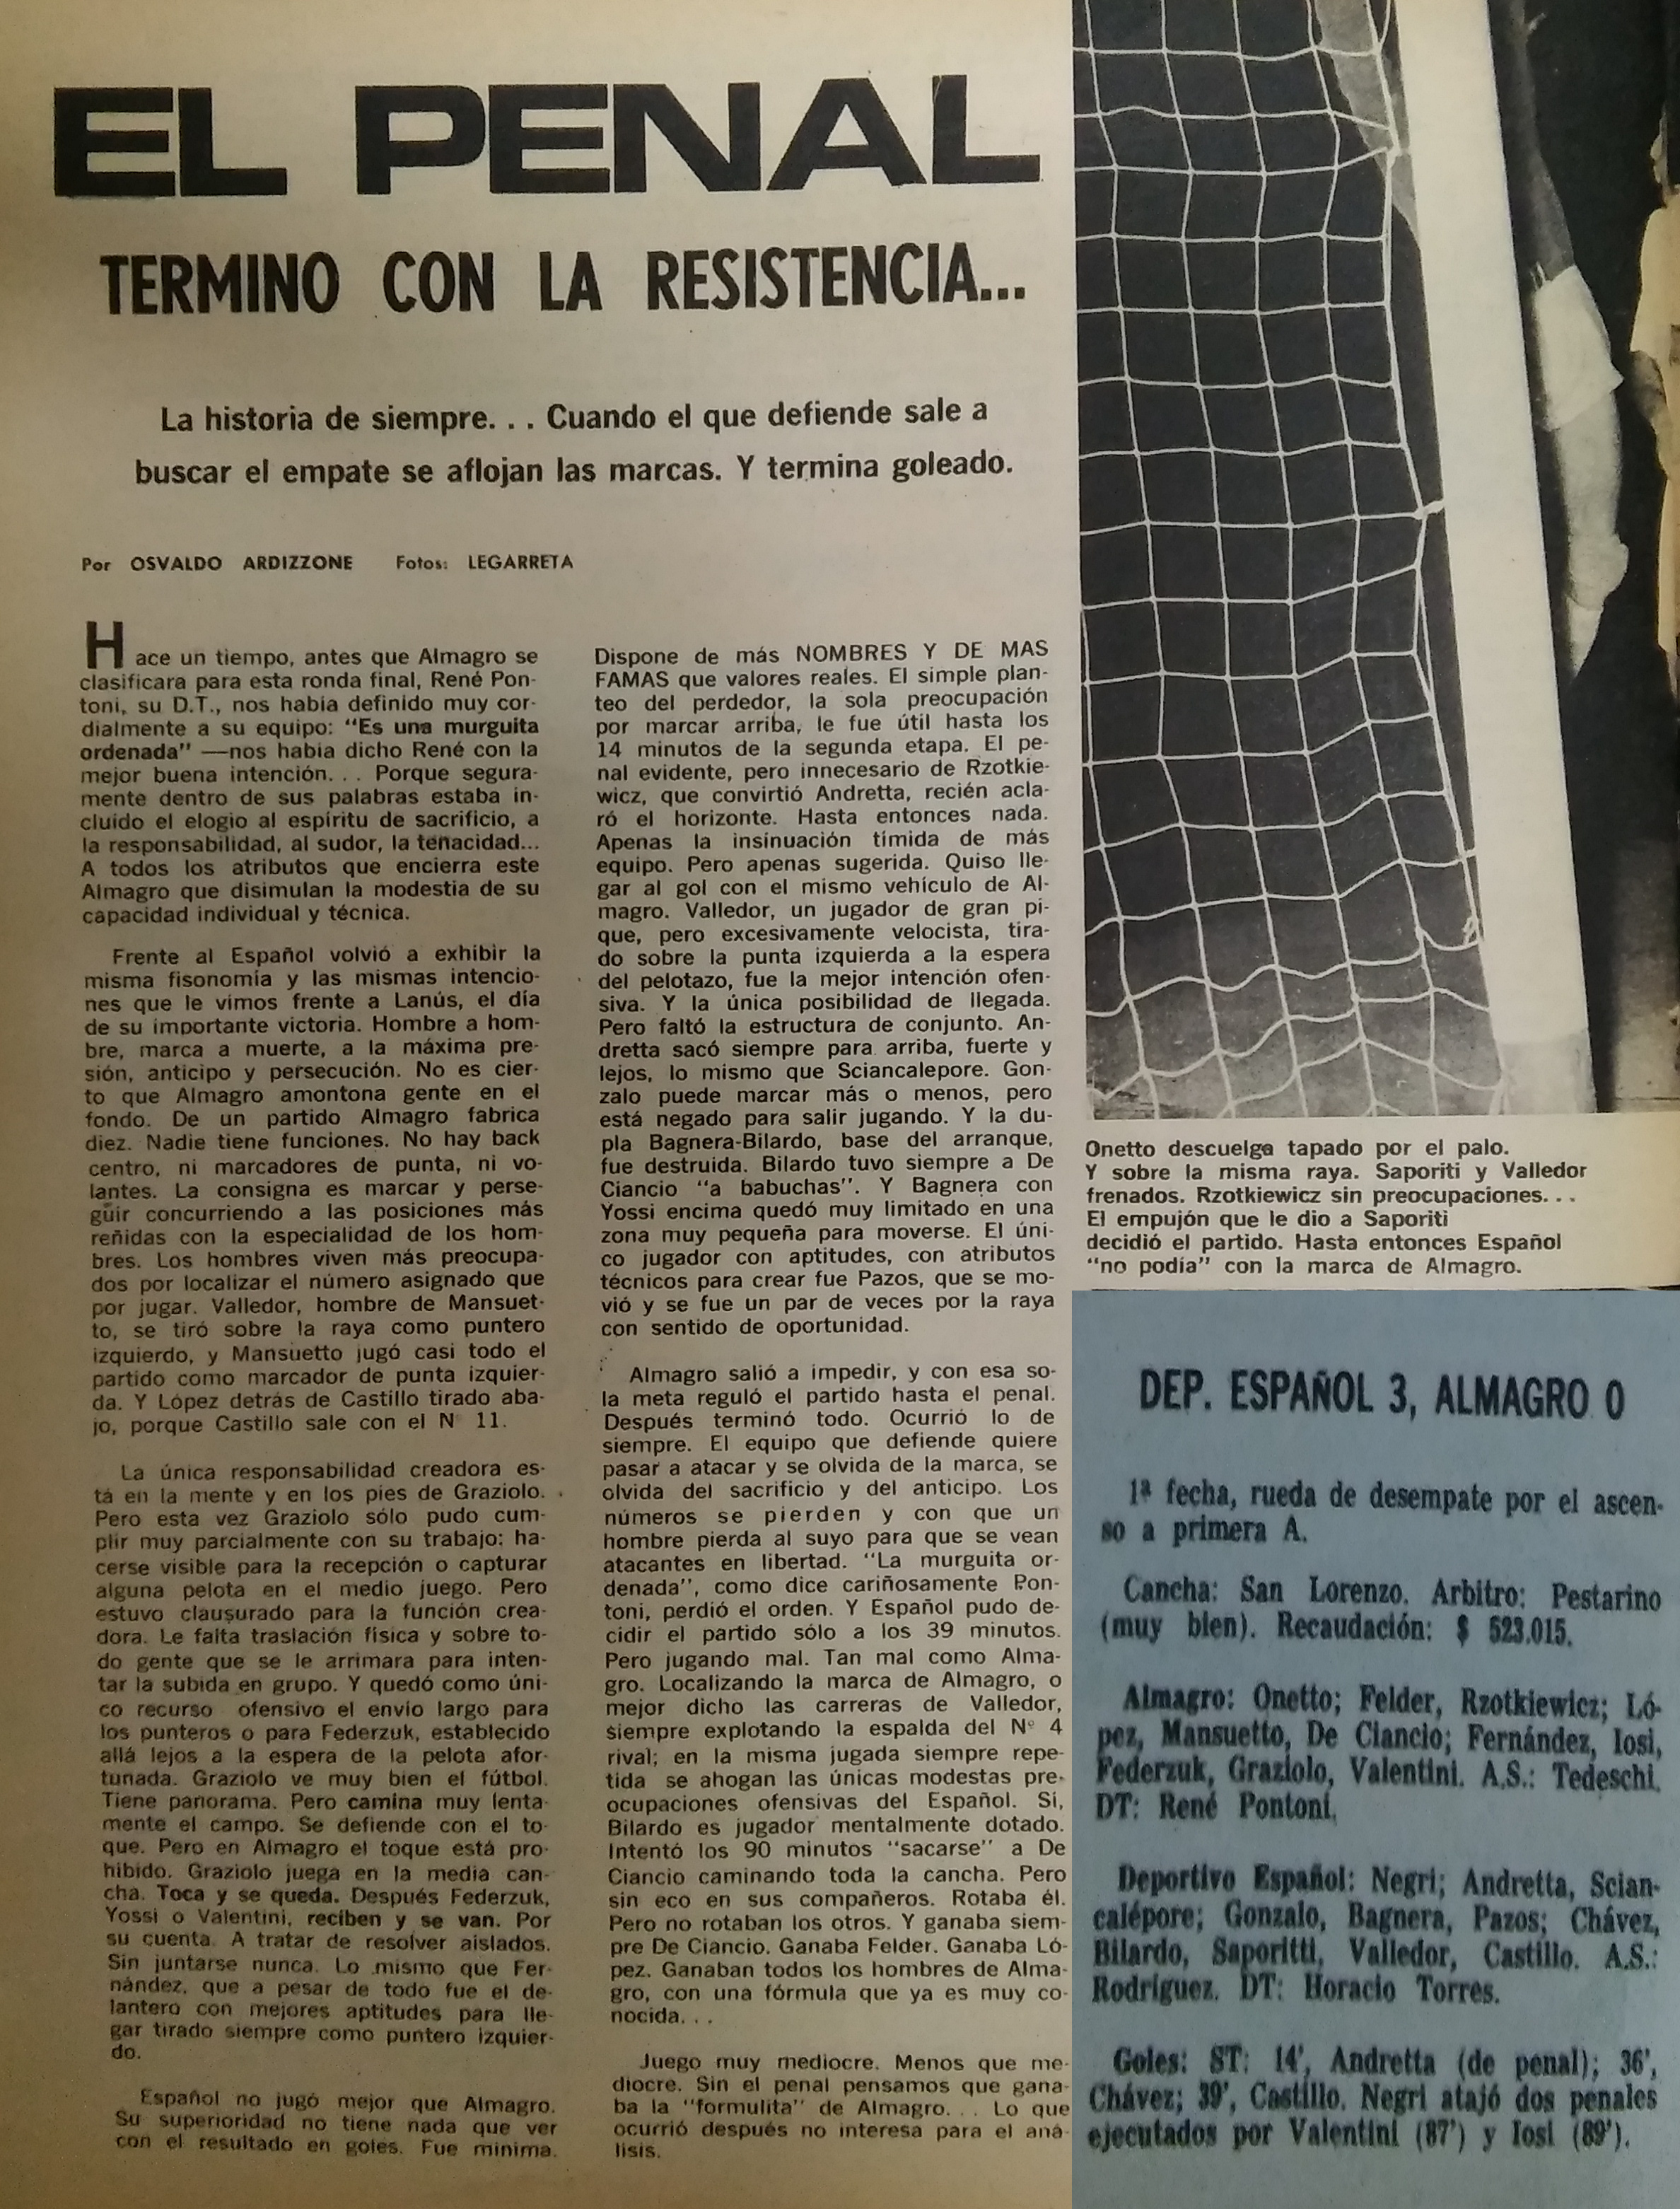 1964-almagro-vs-dep-espanol-torneo-2do-ascenso